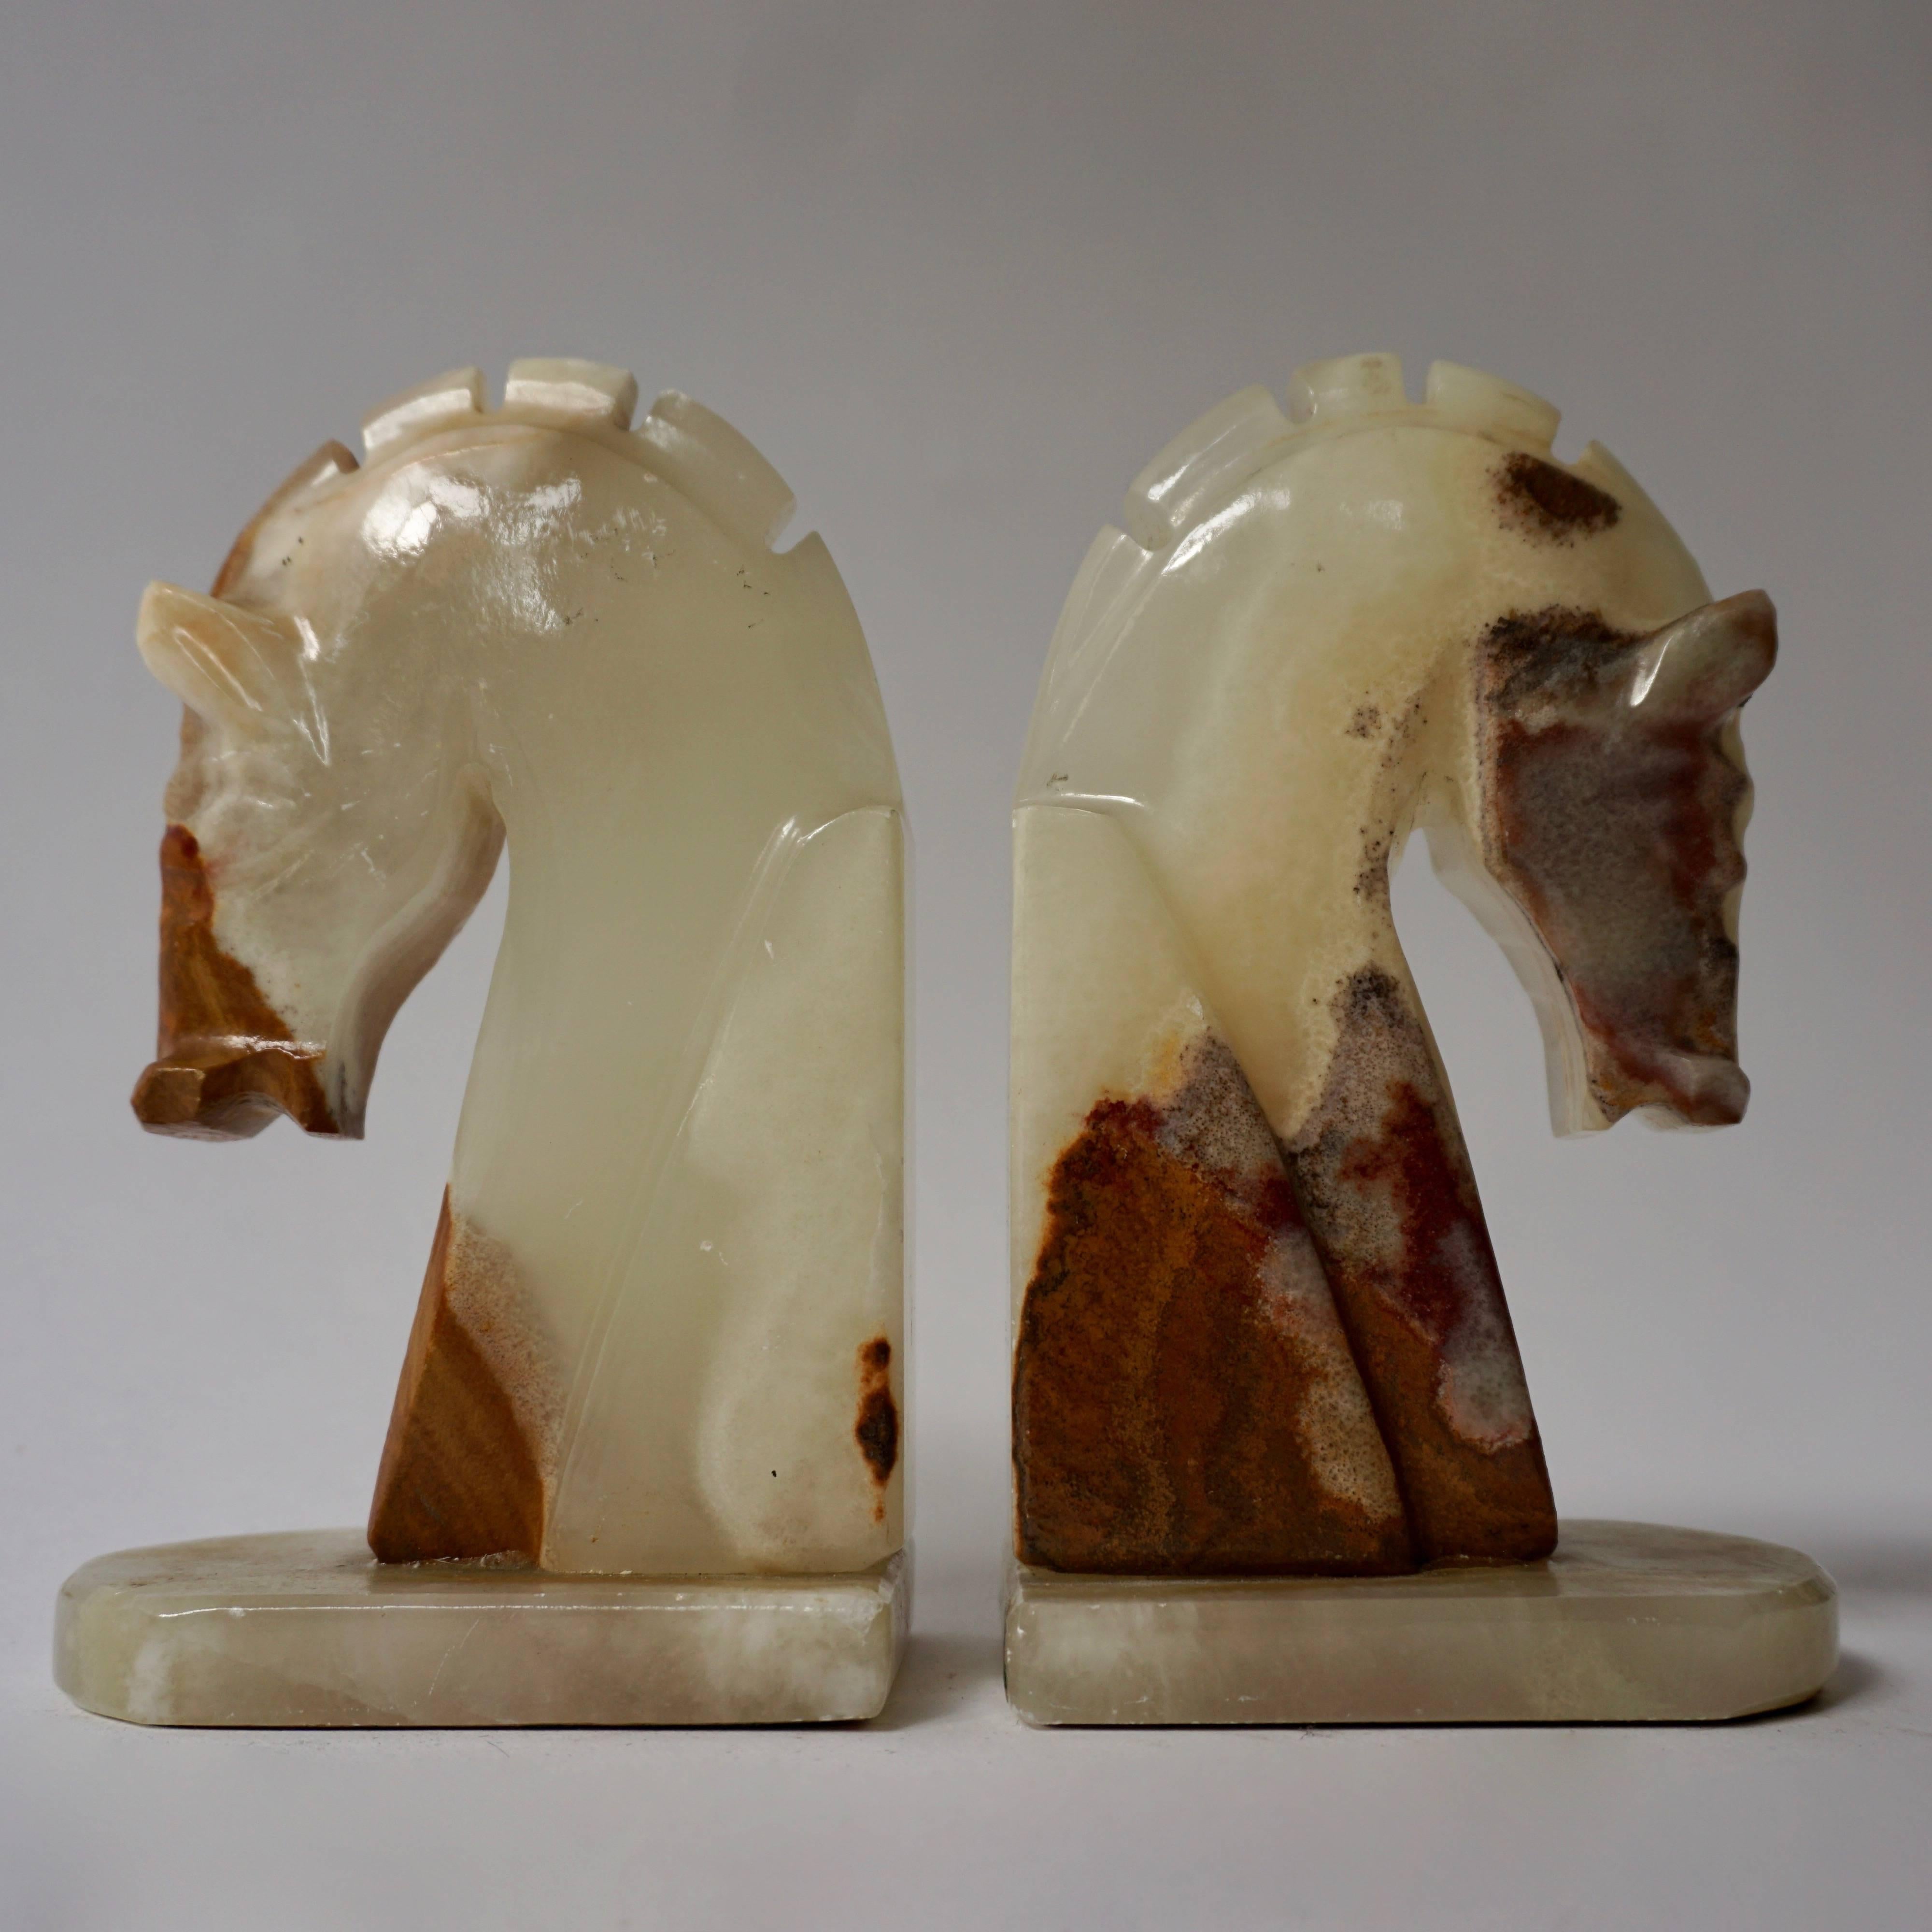 Une belle et élégante paire de serre-livres Art Déco en onyx sculptés à la main, avec tête de cheval inclinée.
Italie, vers les années 1940.